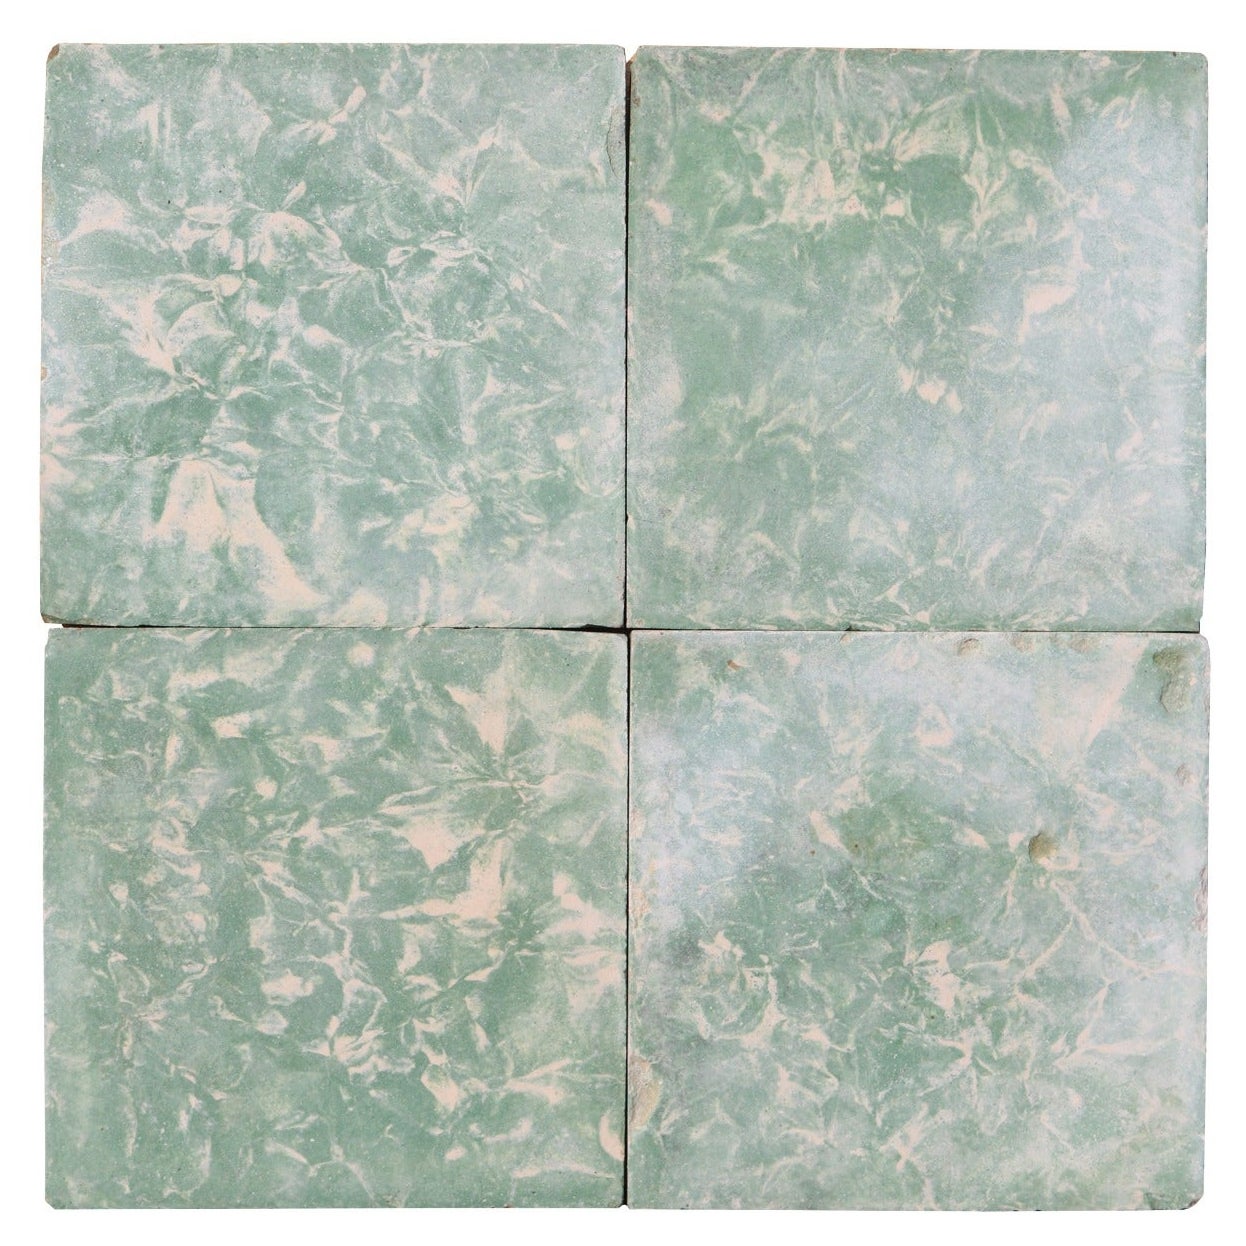 Zementbodenfliesen mit grünem Marmoreffekt